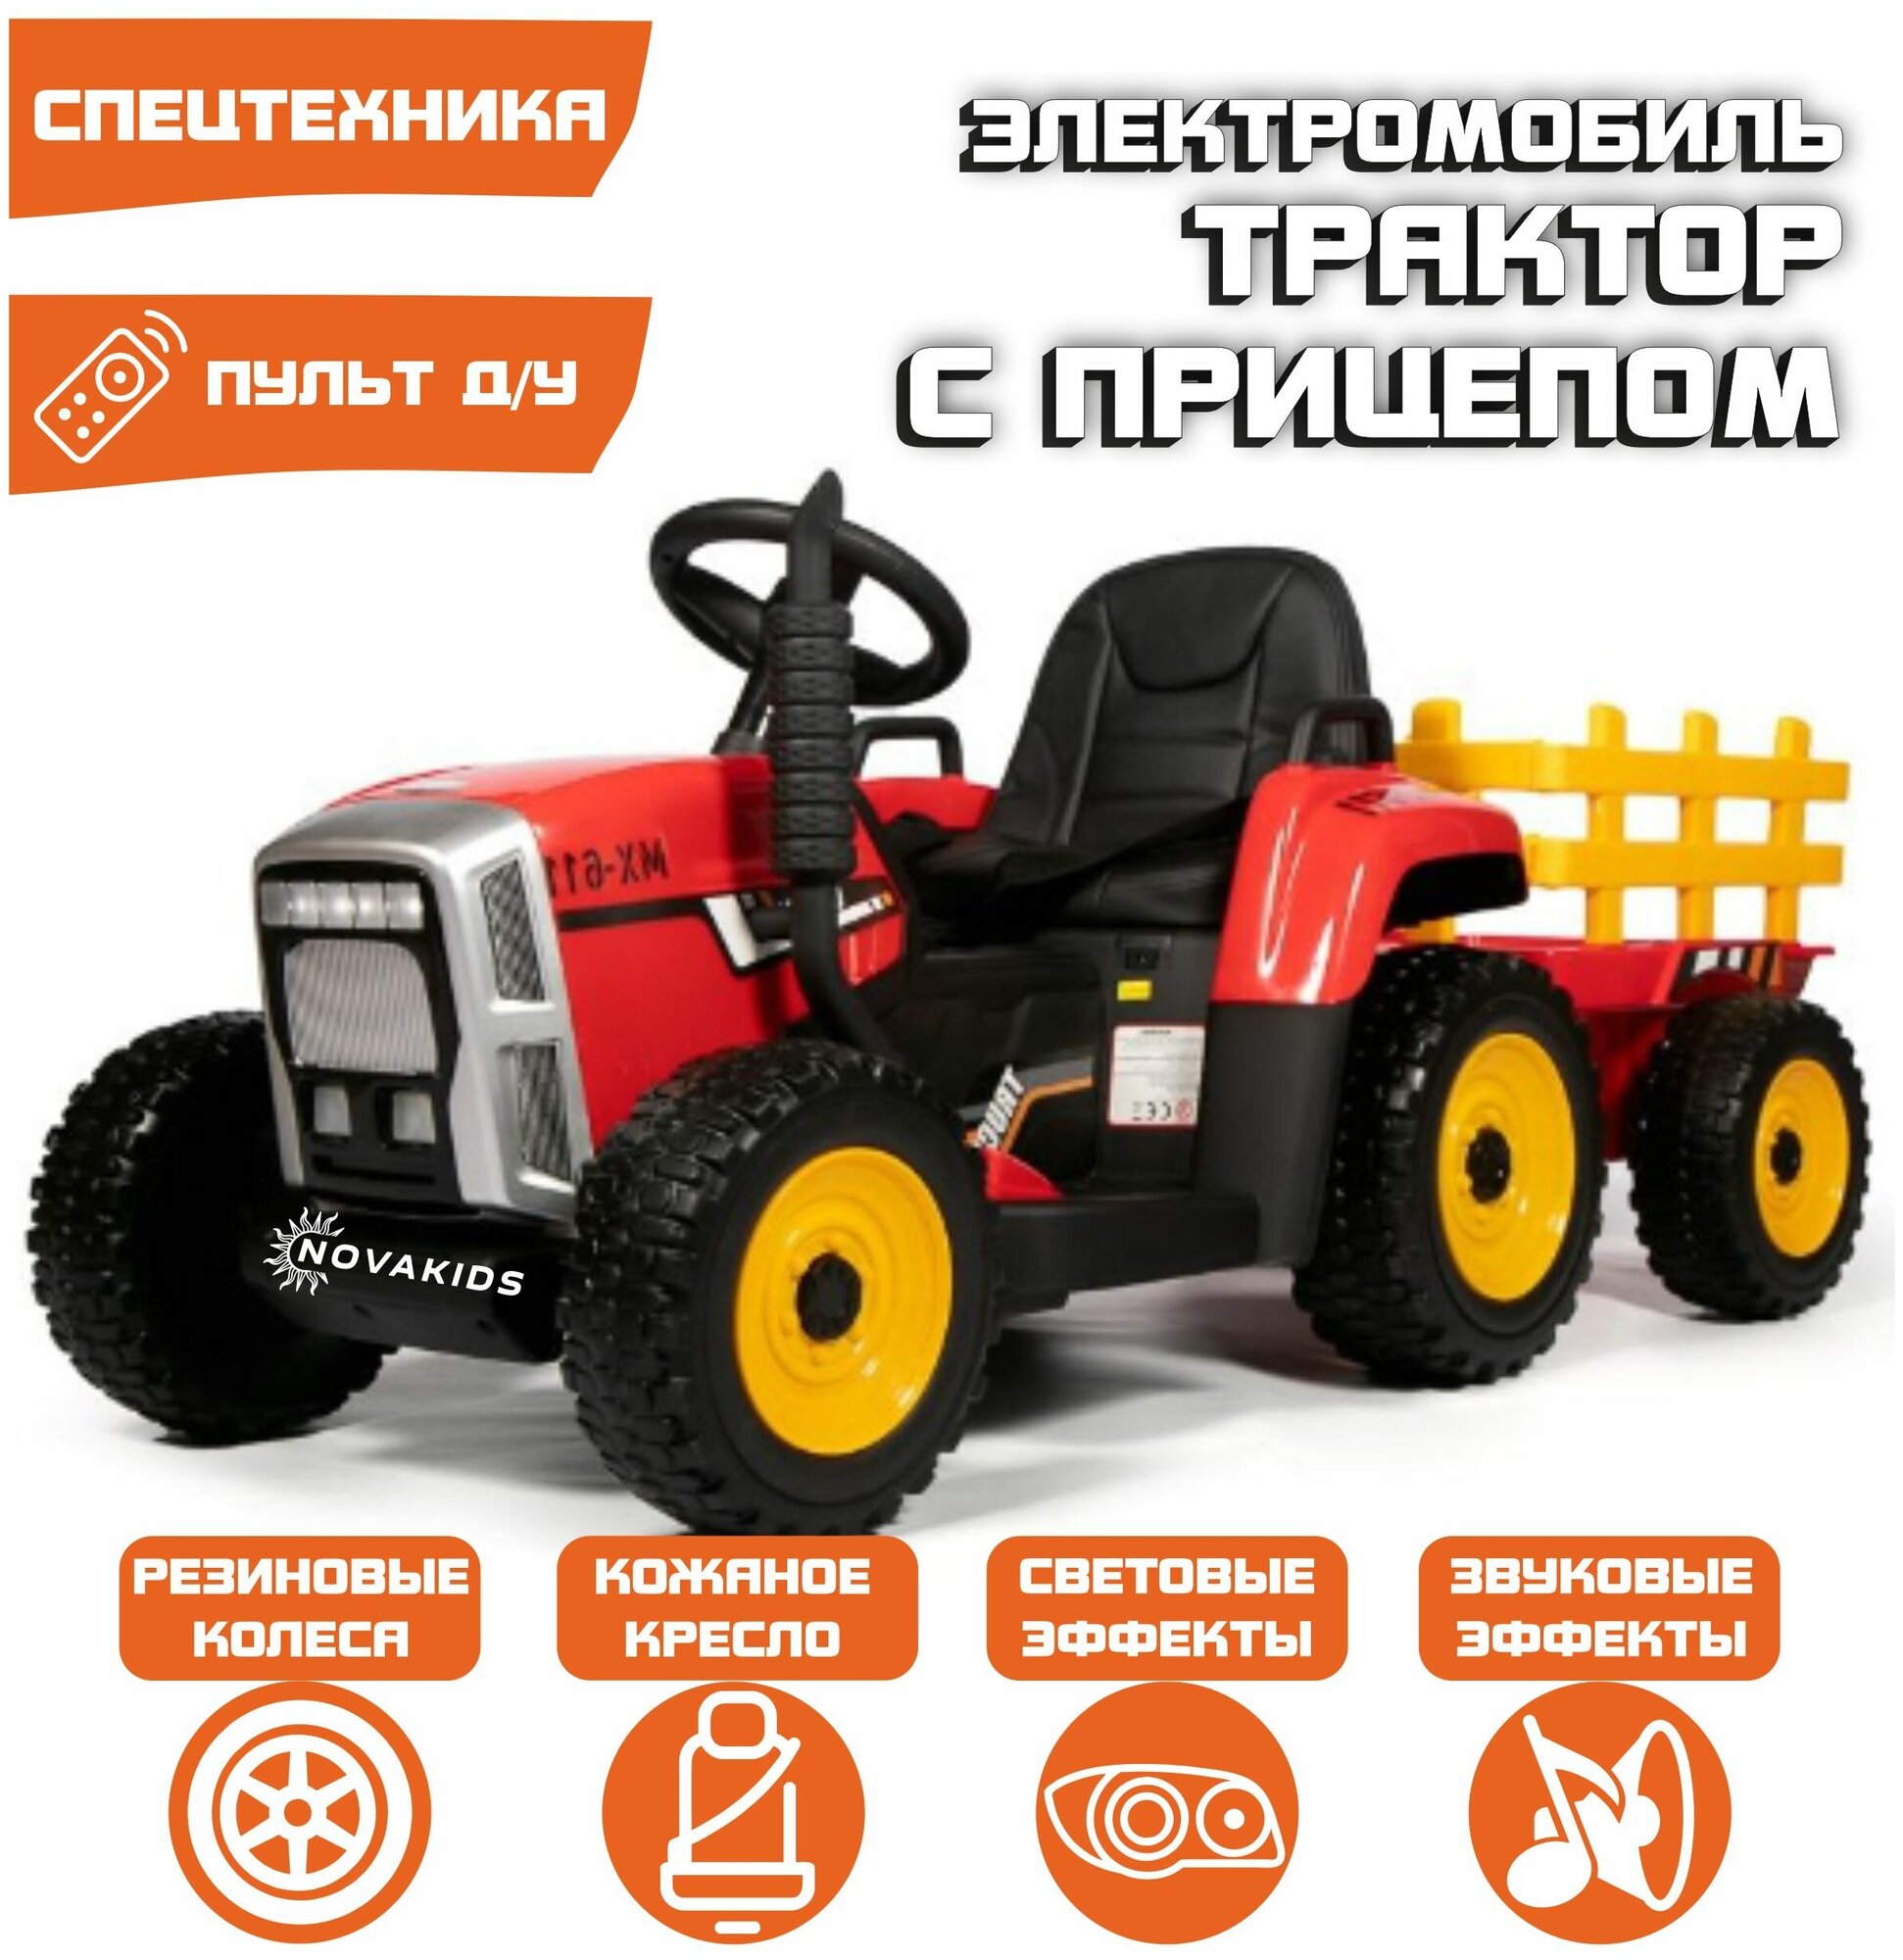 Электромобиль Трактор с прицепом (Красный)